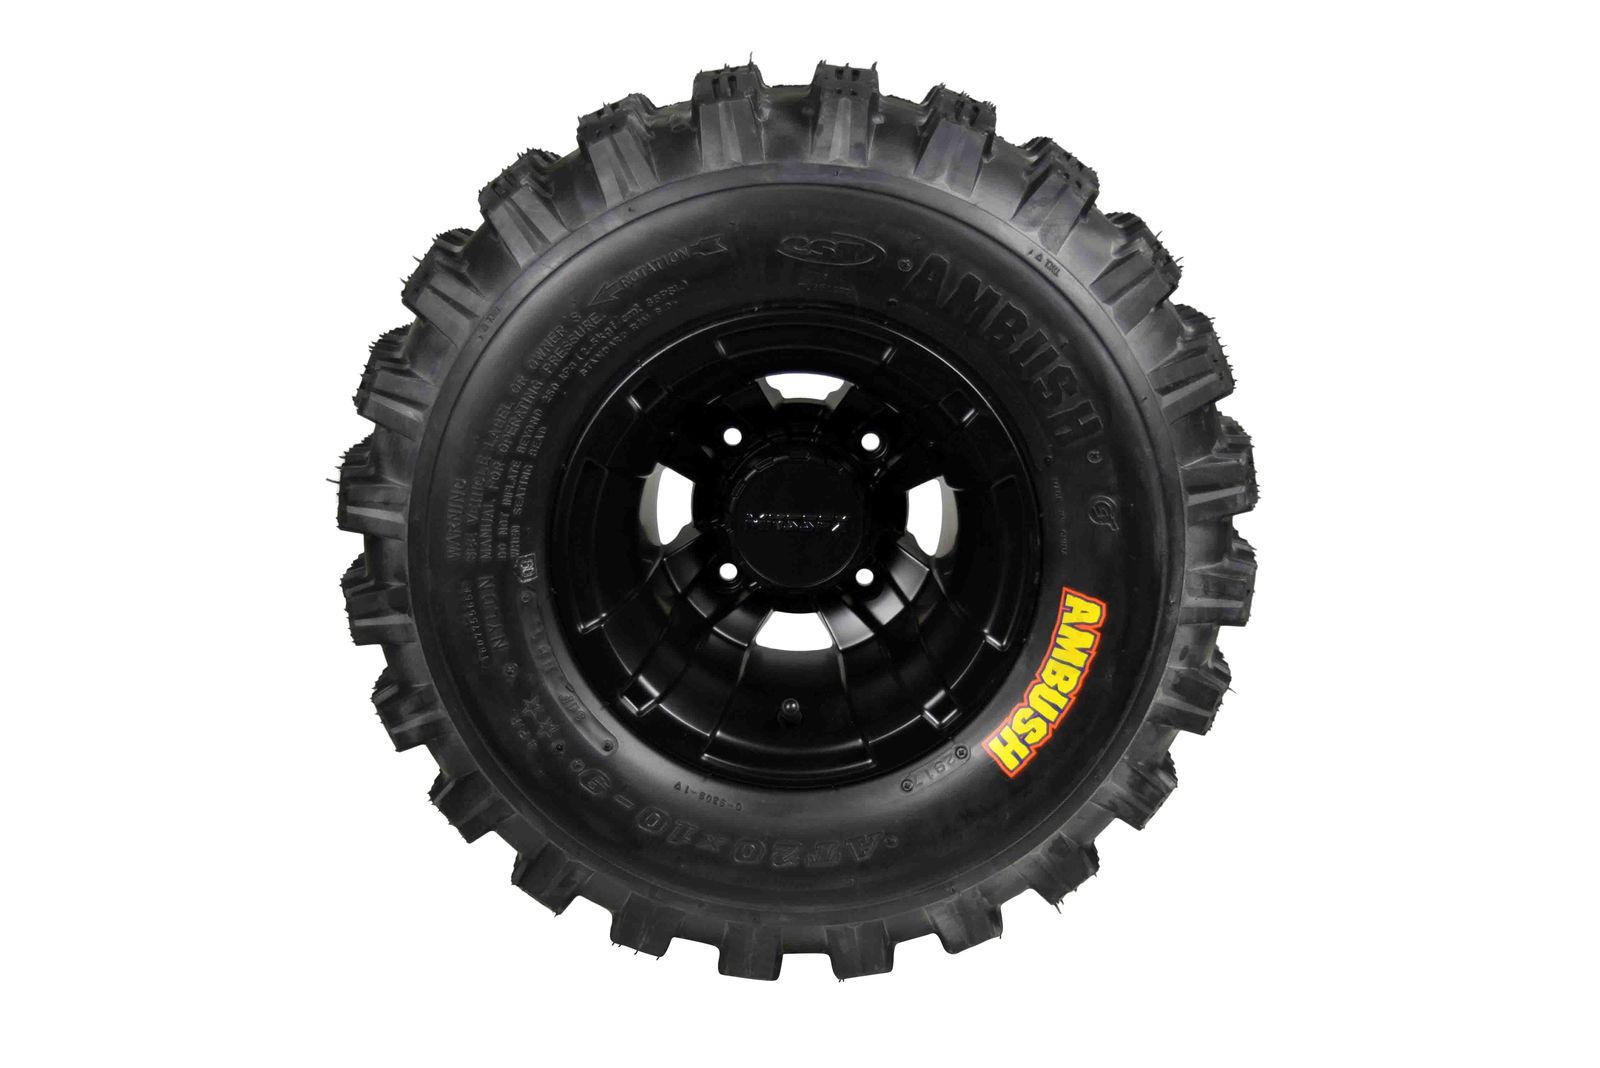 MASSFX 21x7-10 20x10-9 ATV Front Rear Tire & Wheel Kit 21x7x10 20x10x9 (4 Pack)